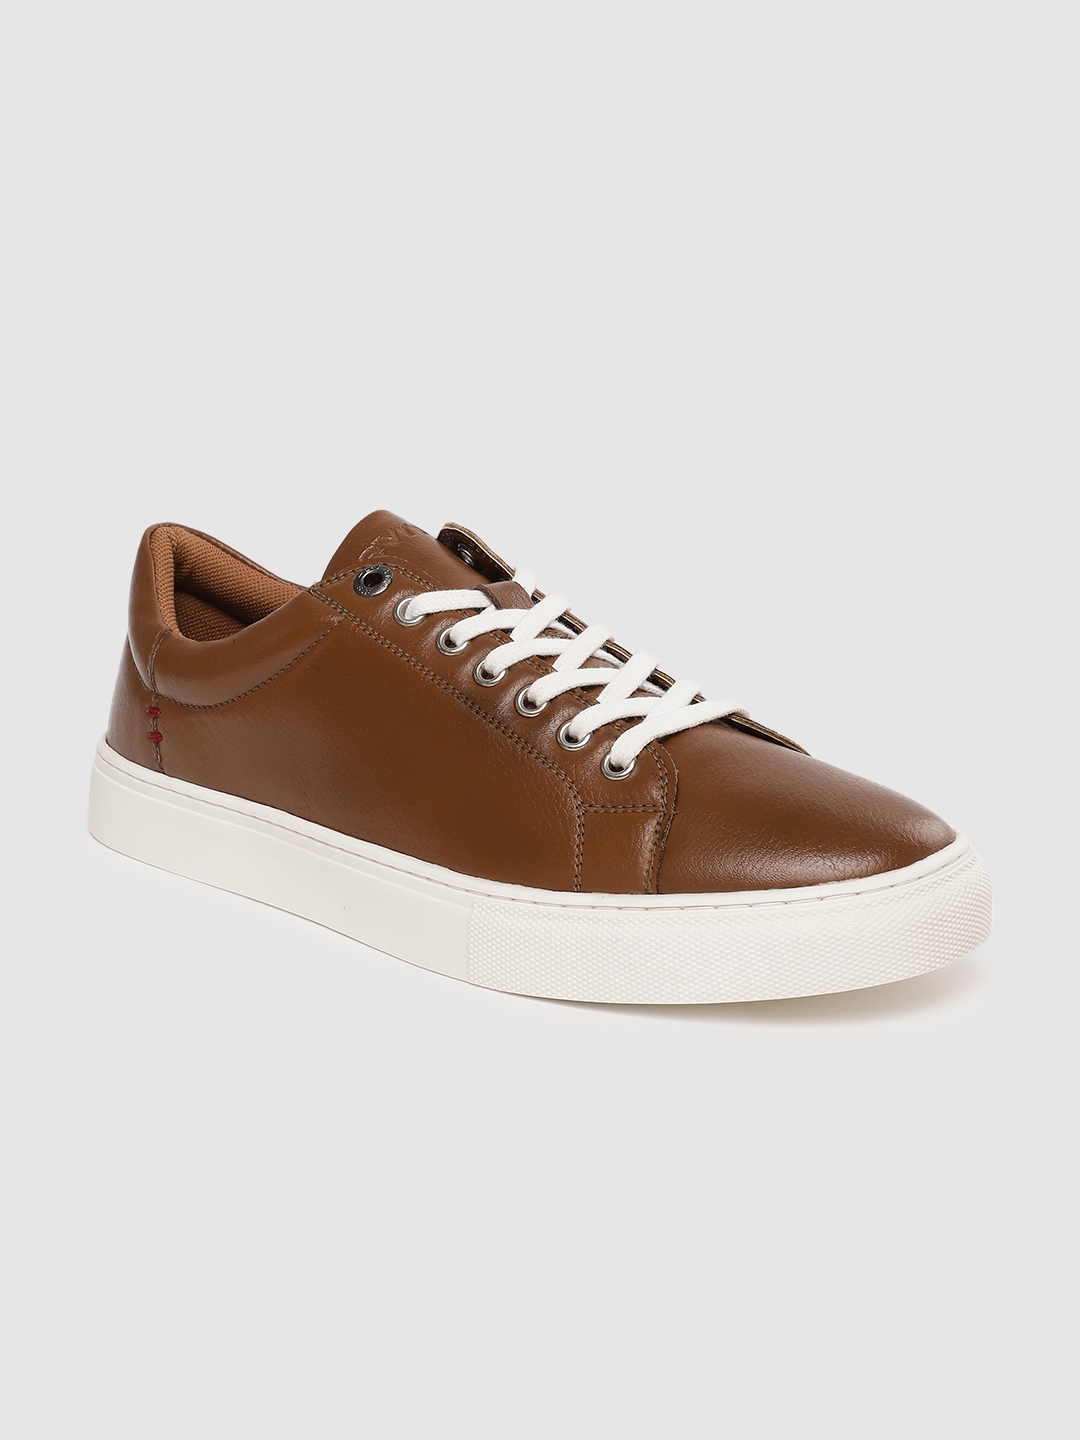 brown sneakers